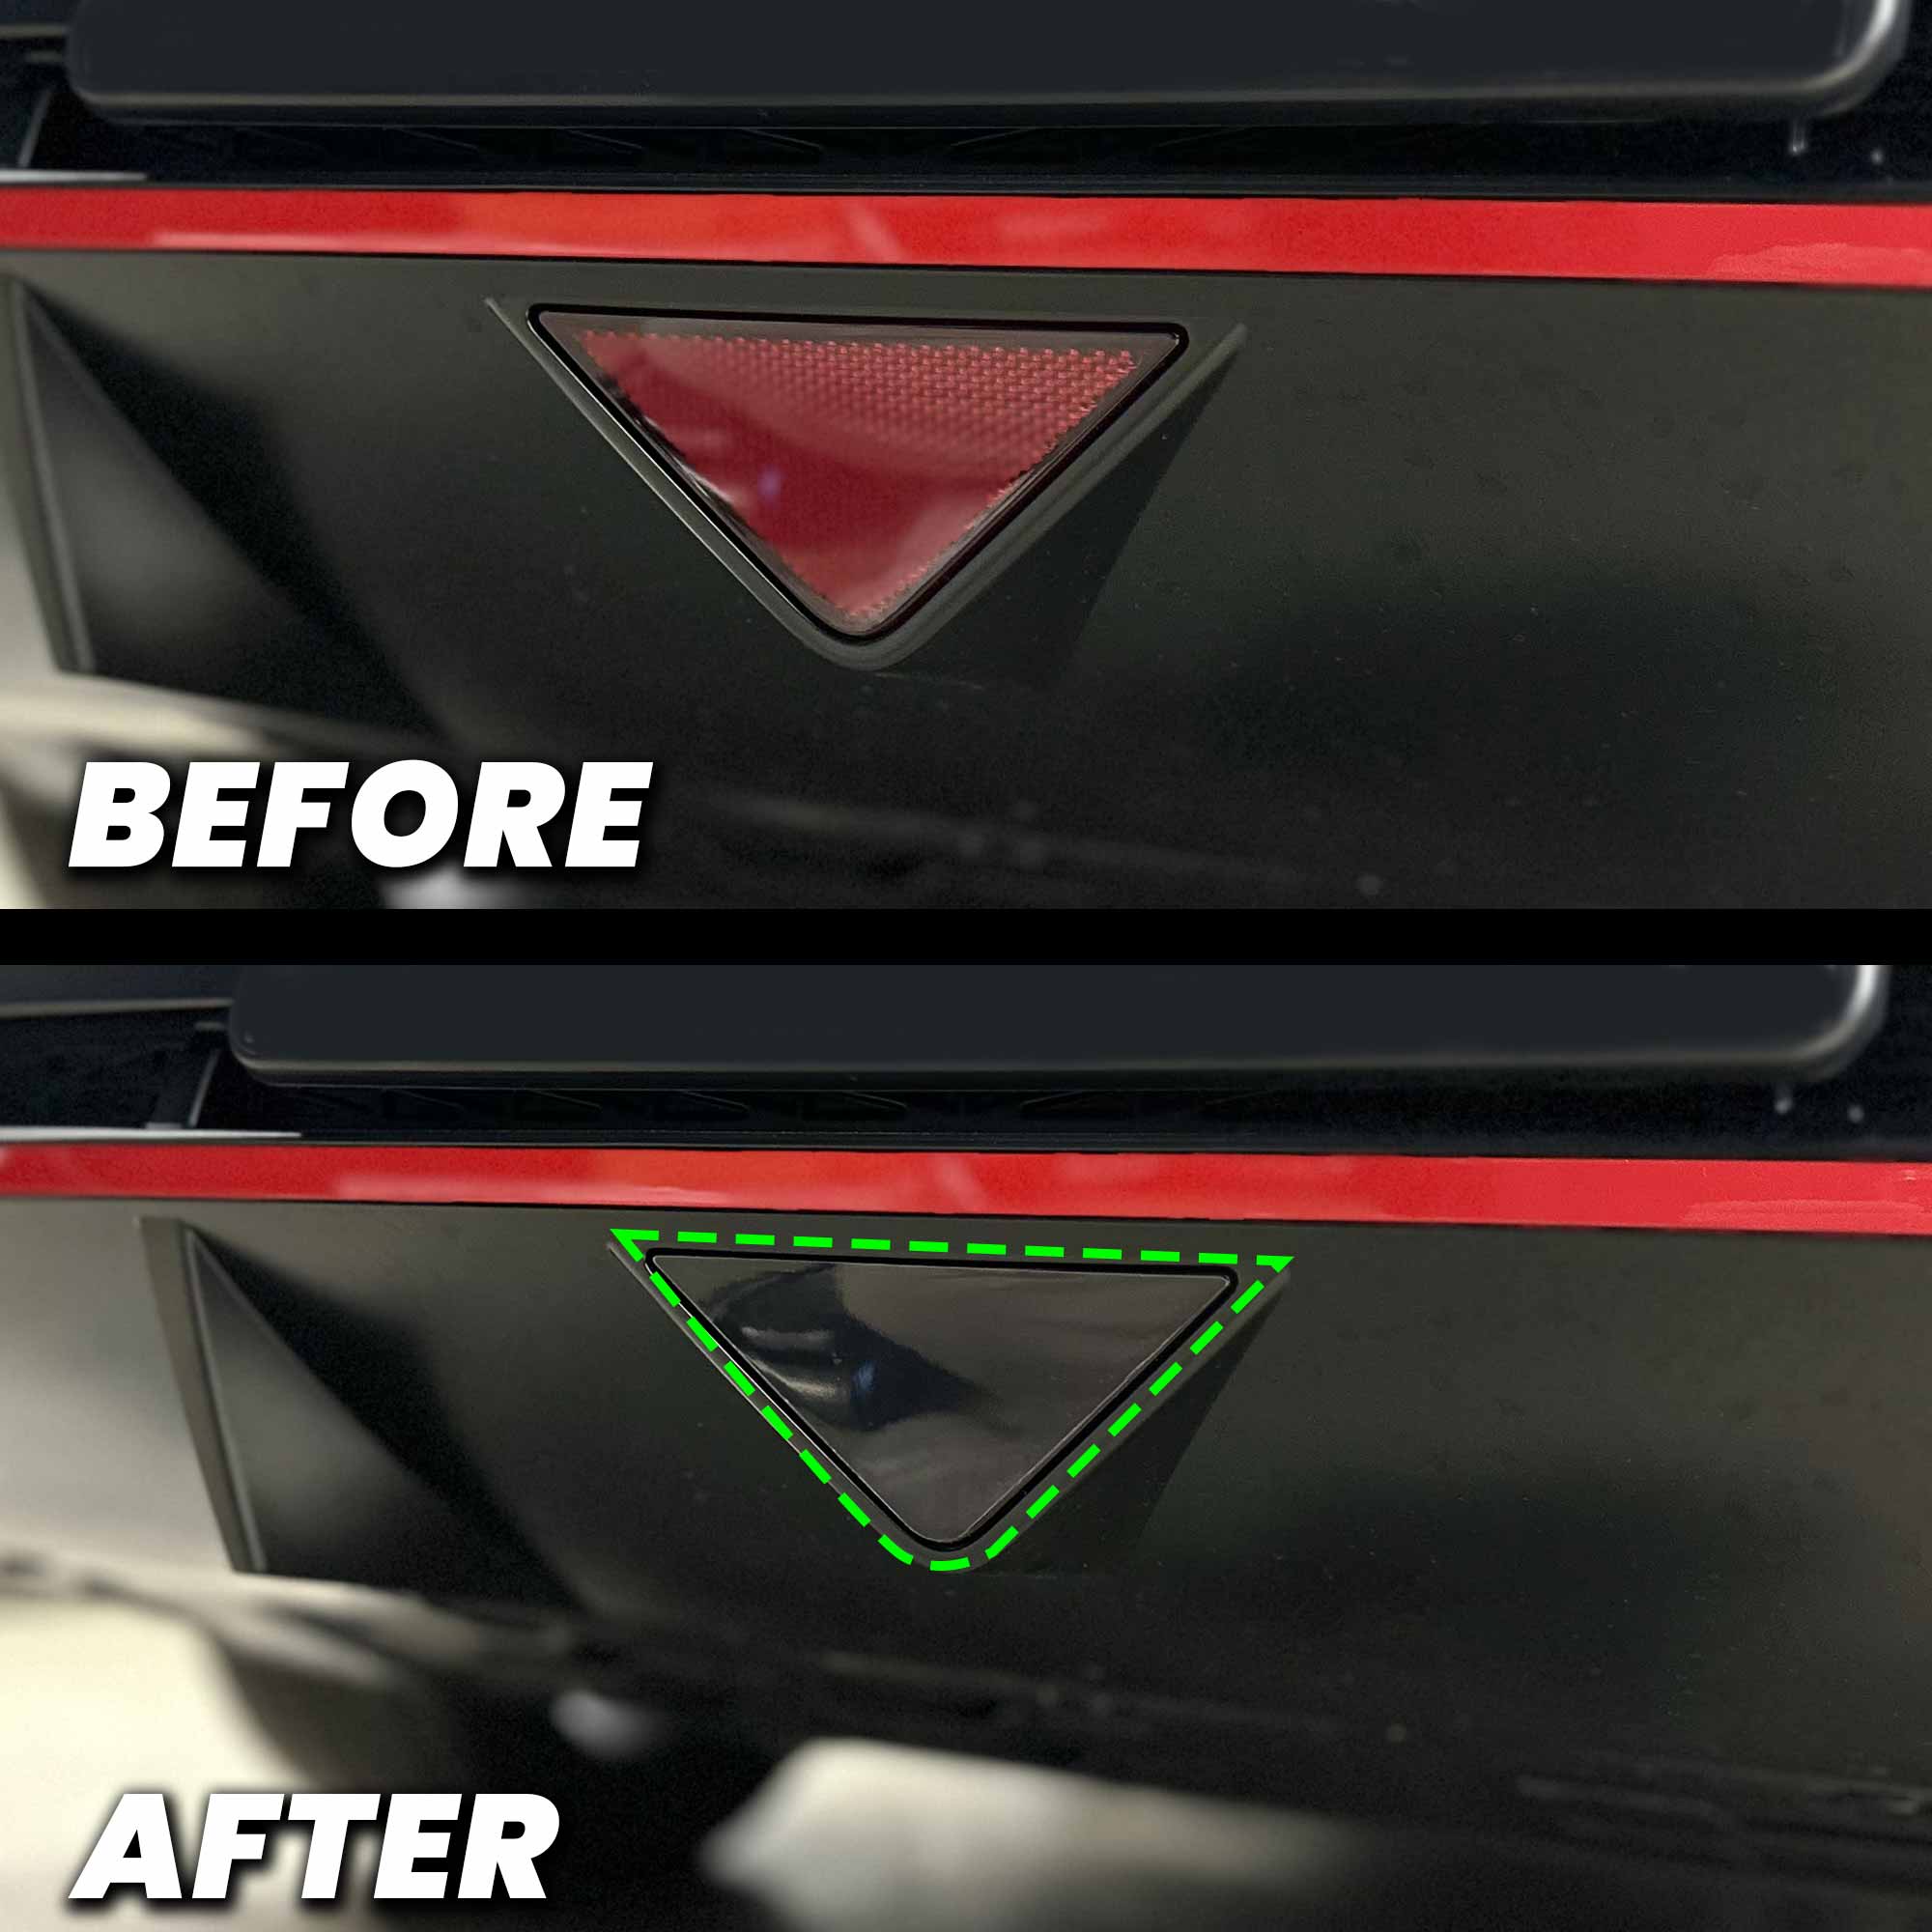 Rear Bumper Triangle Reflector Pre-cut Overlay for Hyundai Elantra N 2021-2023